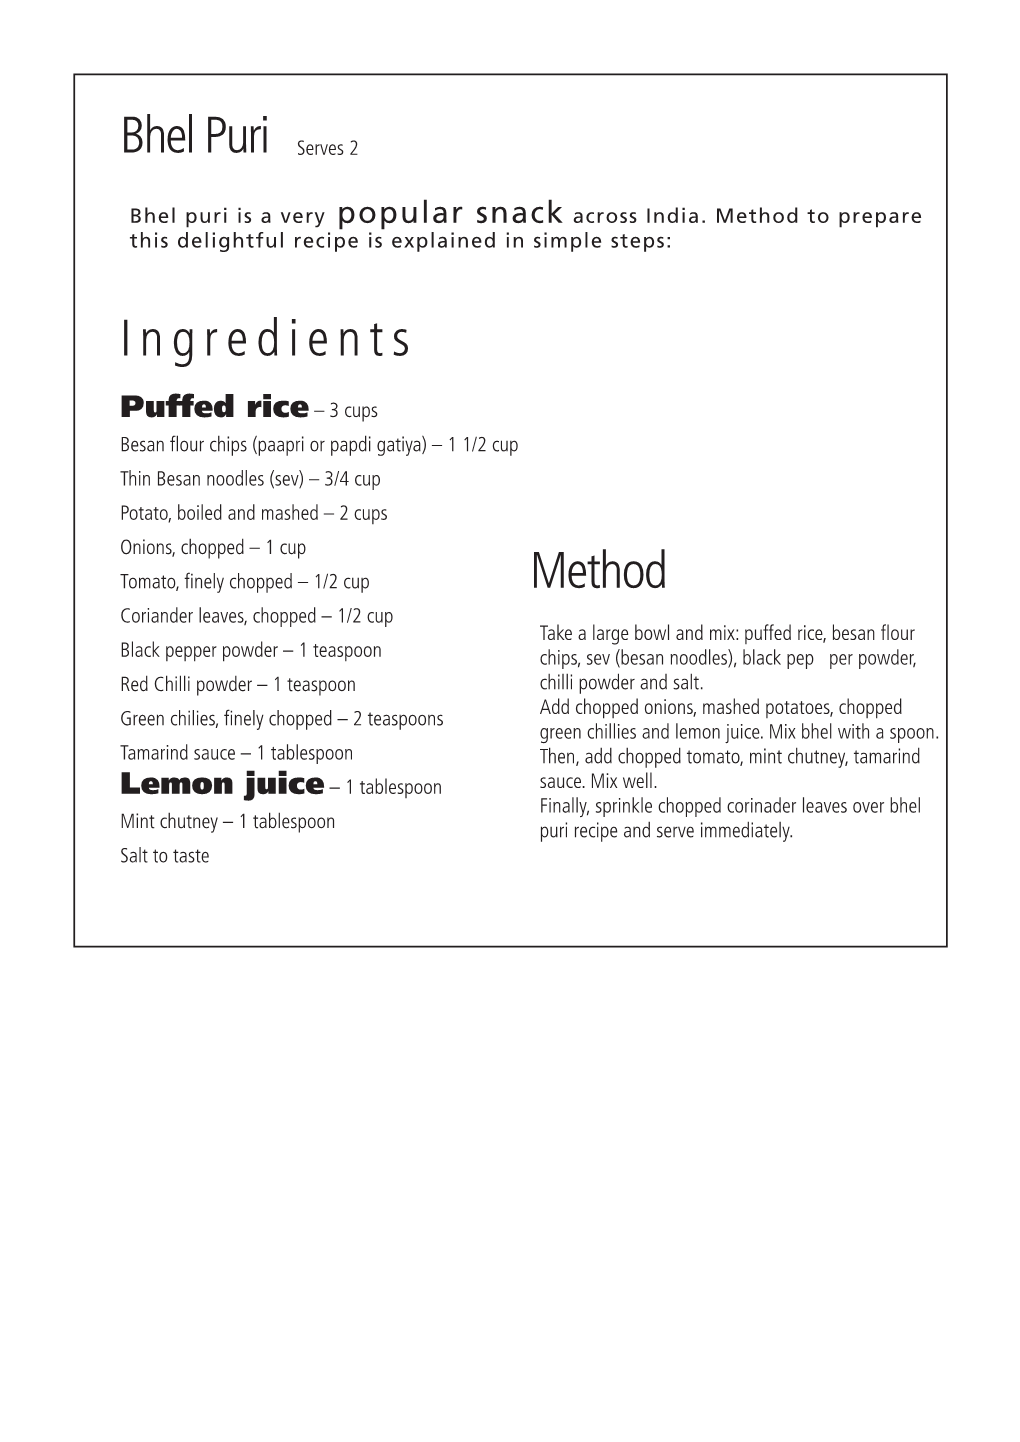 Bhel Puri Ingredients Method